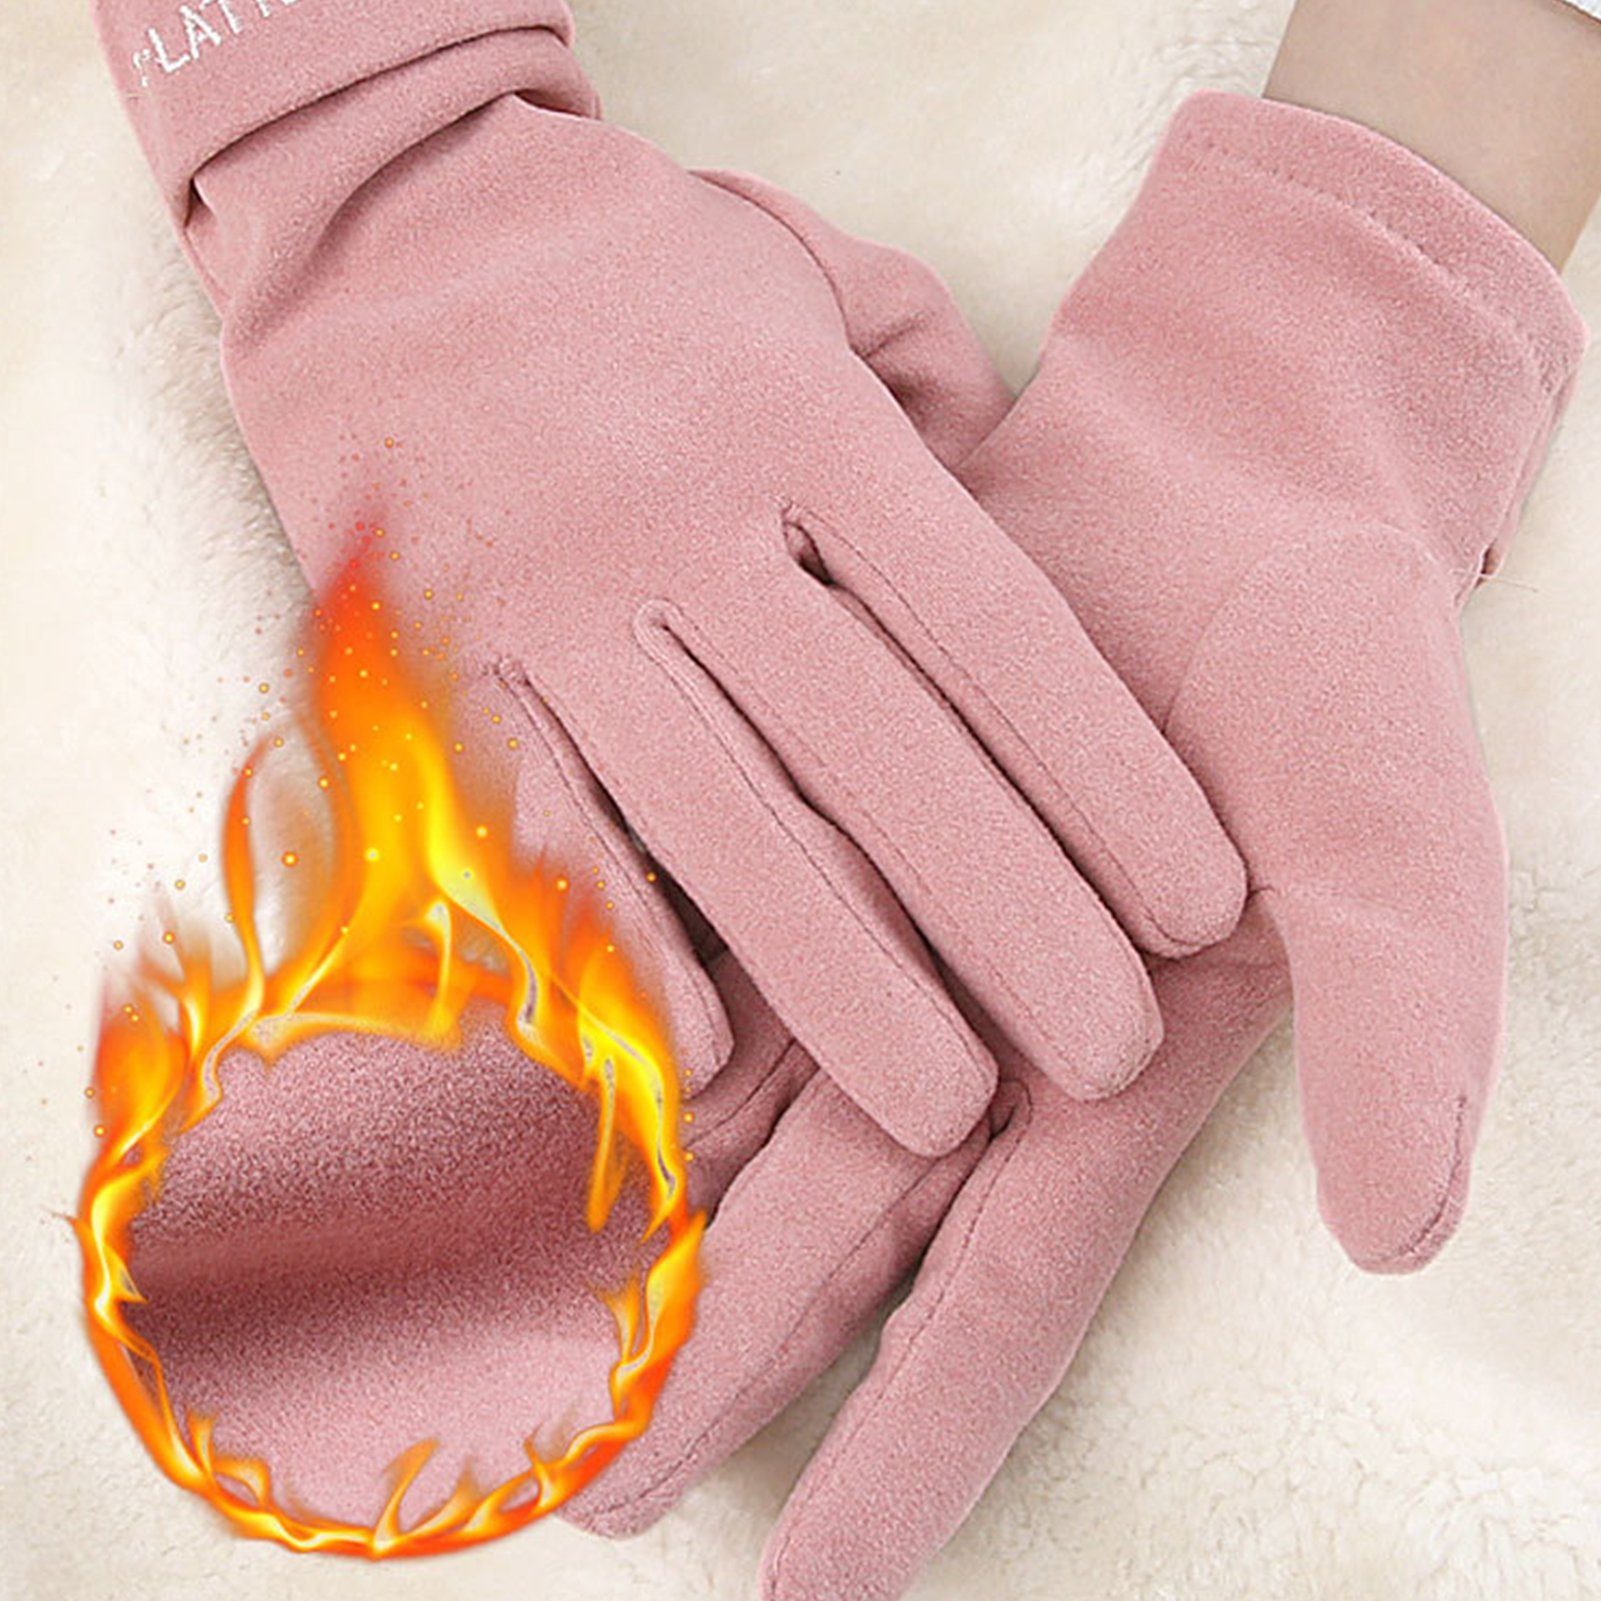 Rutaqian Strickhandschuhe 1 Paar Damen Winter Touchscreen Handschuhe Warm Fleece Gefüttert Warme Fingerhandschuhe für Damen Sport Rosa